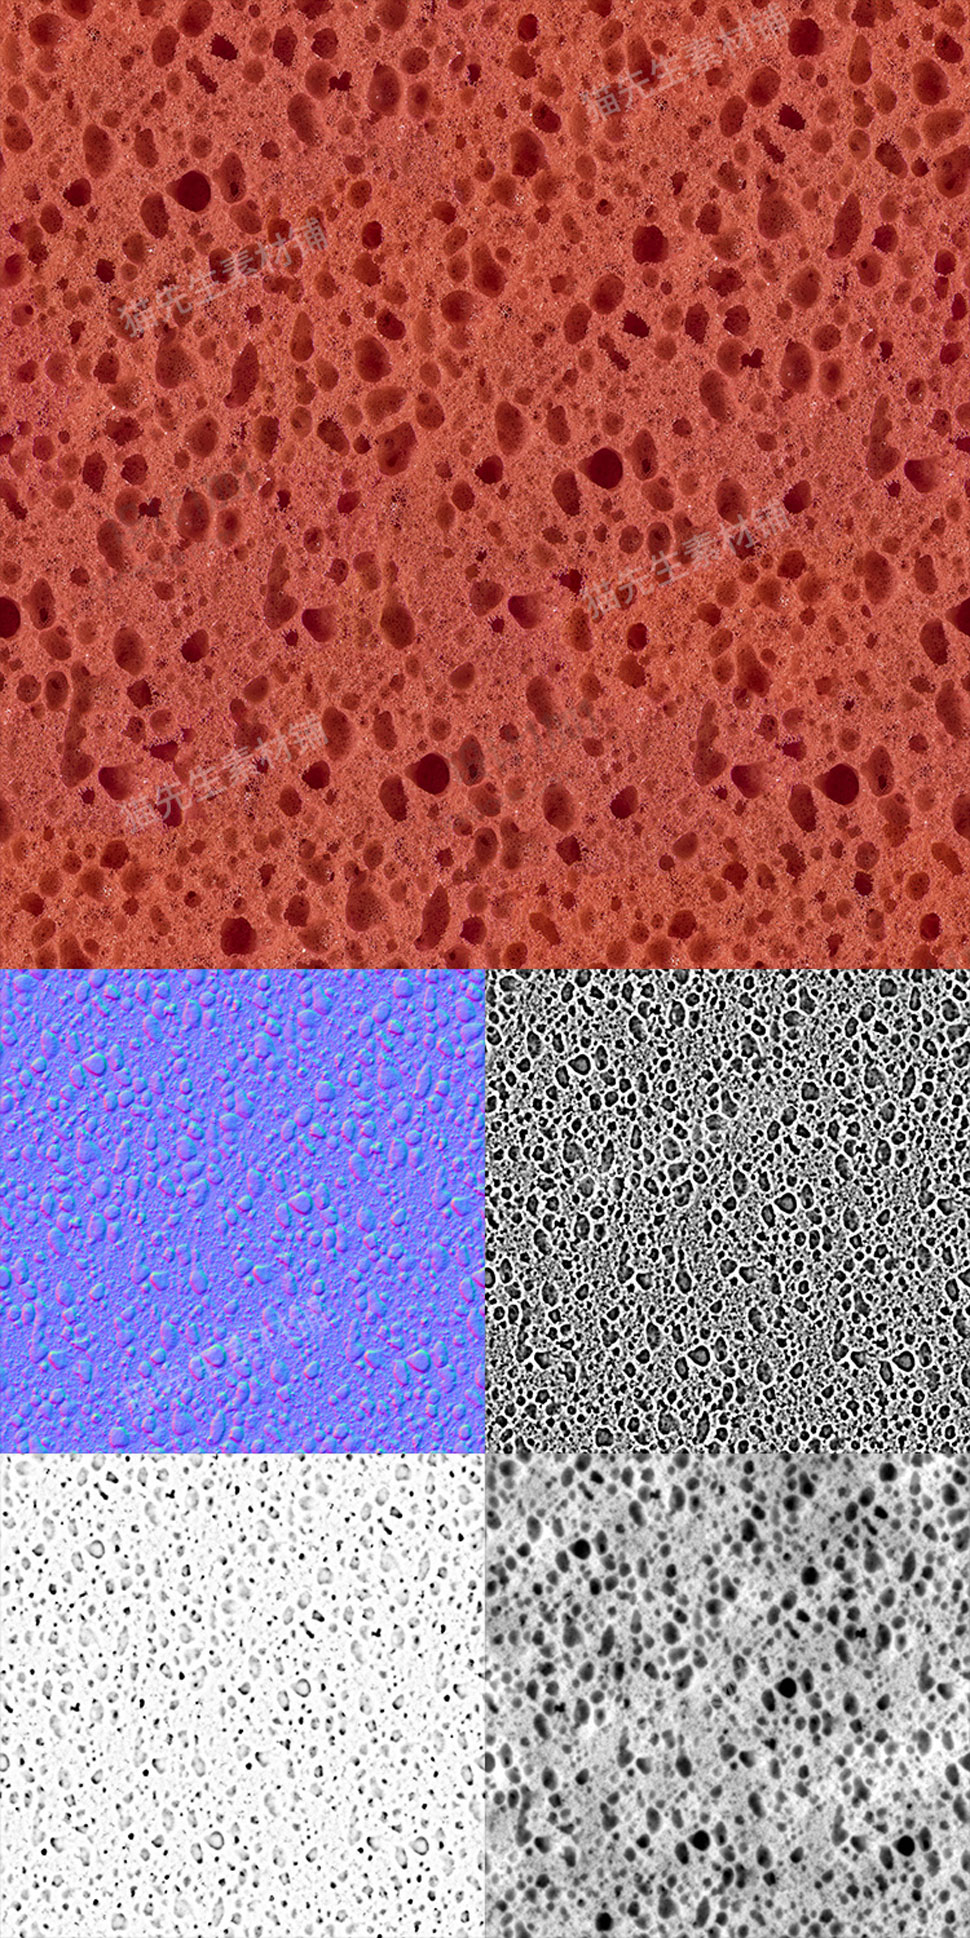 C4D海绵材质泡沫贴图6K高清纹理素材